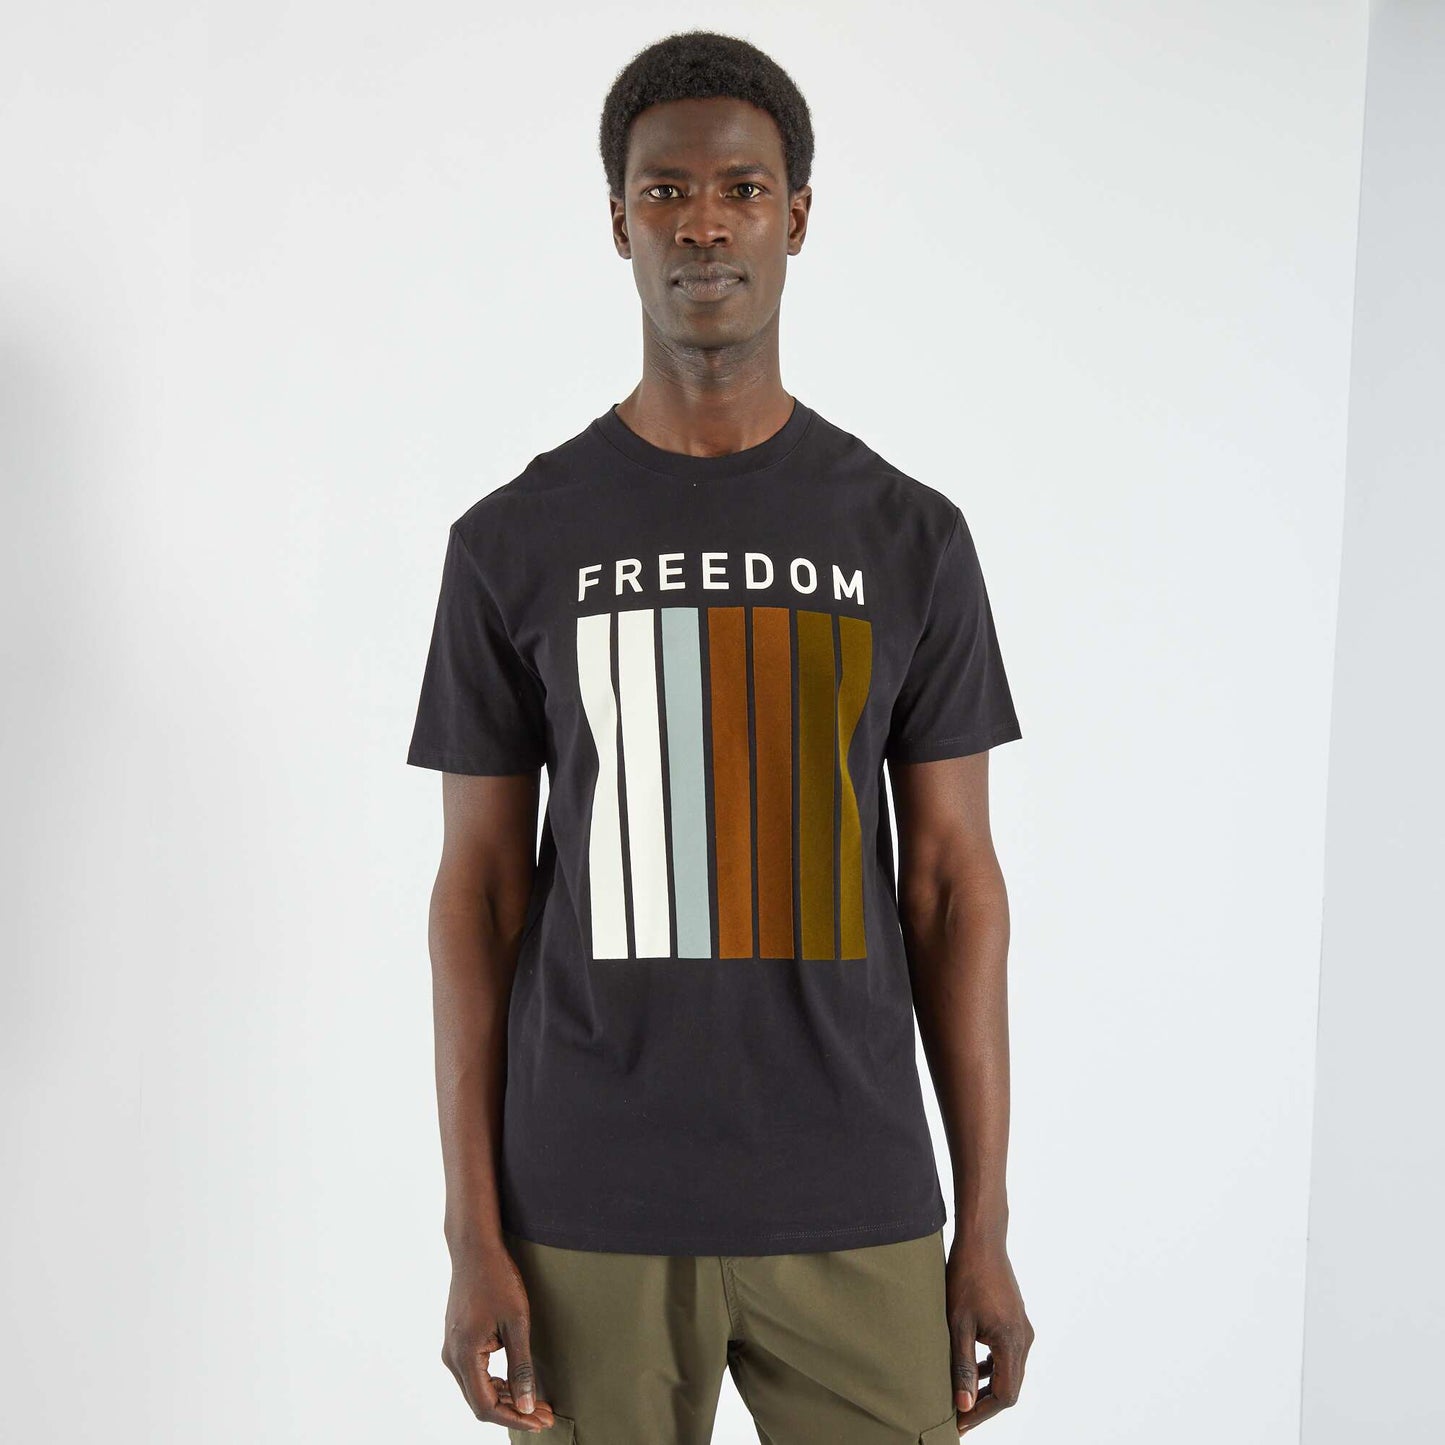 Camiseta con mensaje 'freedom' negro